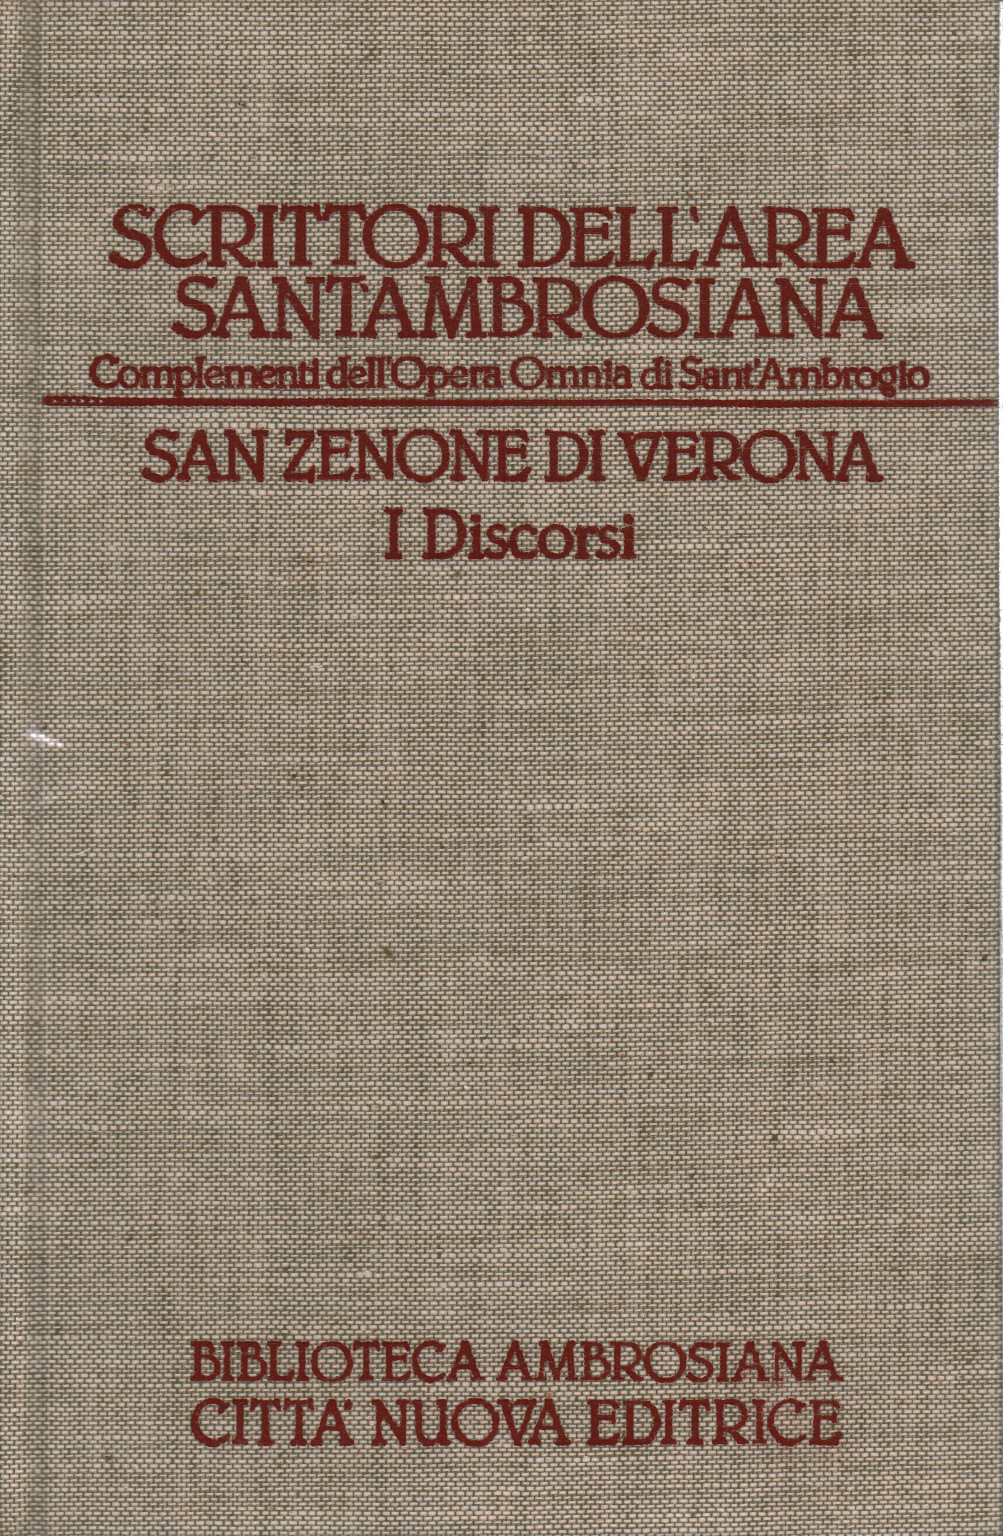 San Zenone von Verona. Die Reden